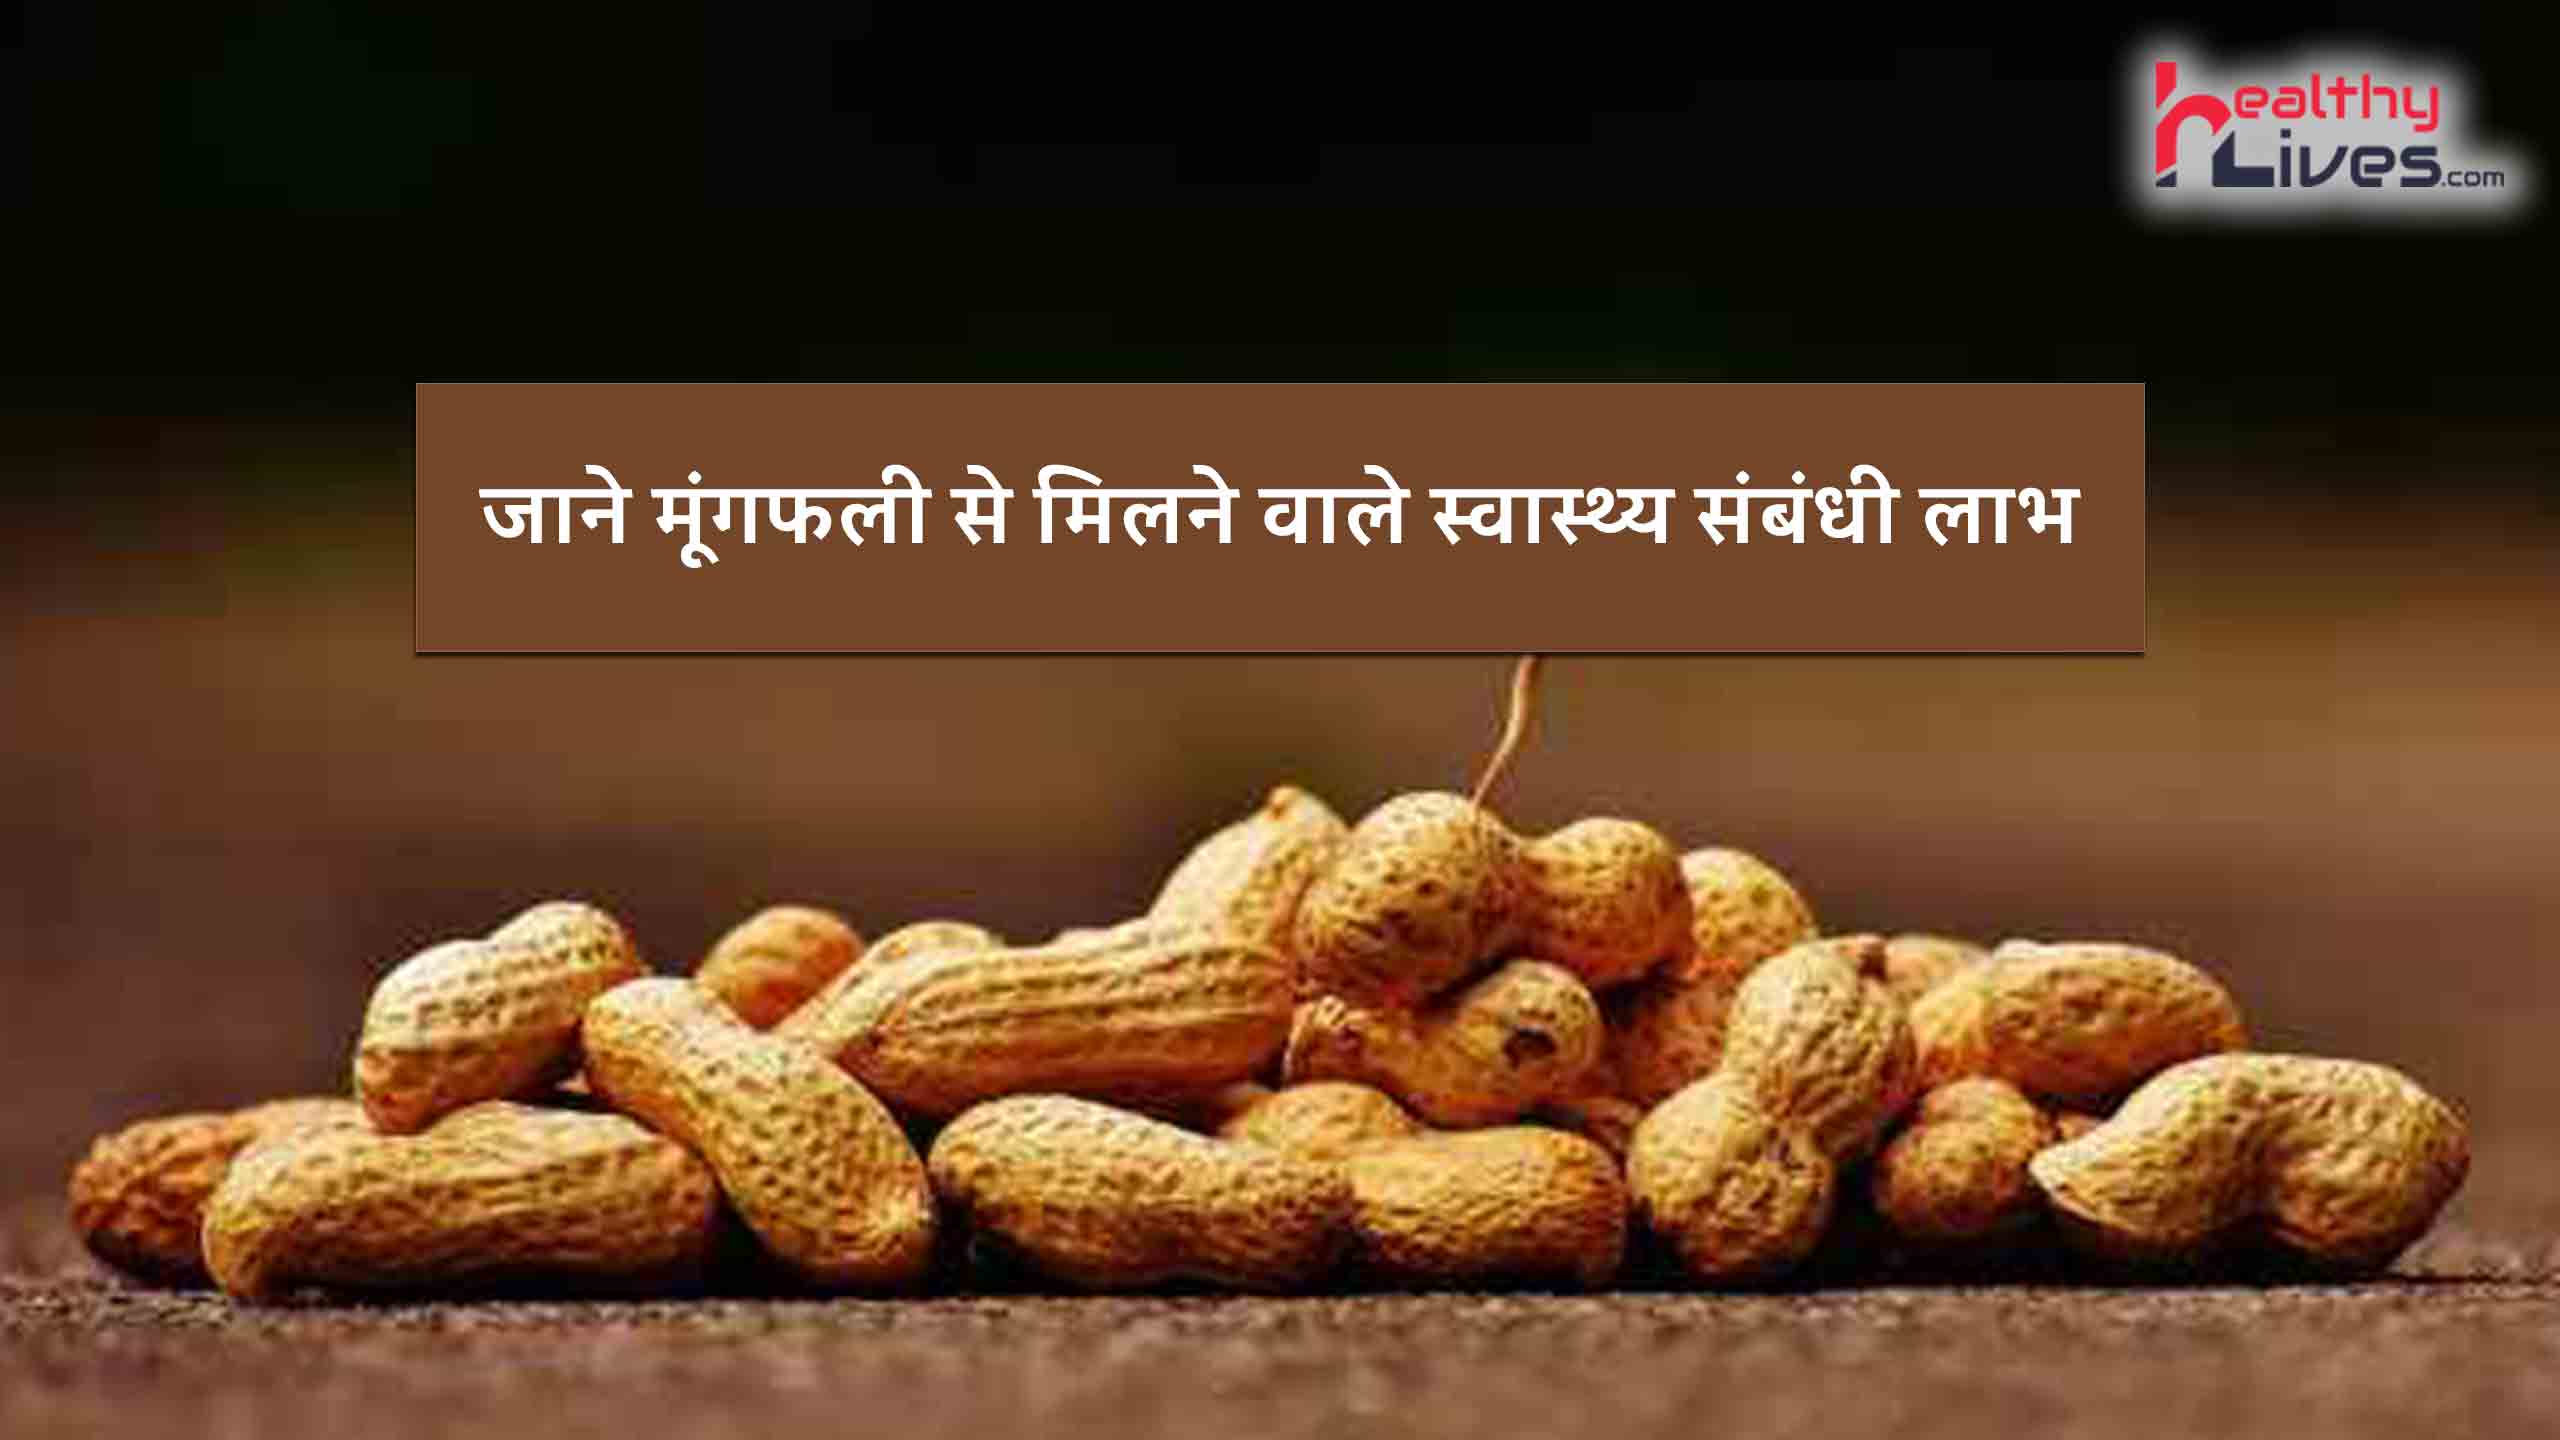 Benefits Of Peanut: मूंगफली से मिलते हैं कई हेल्थ बेनिफिट्स, जाने इसके फायदे